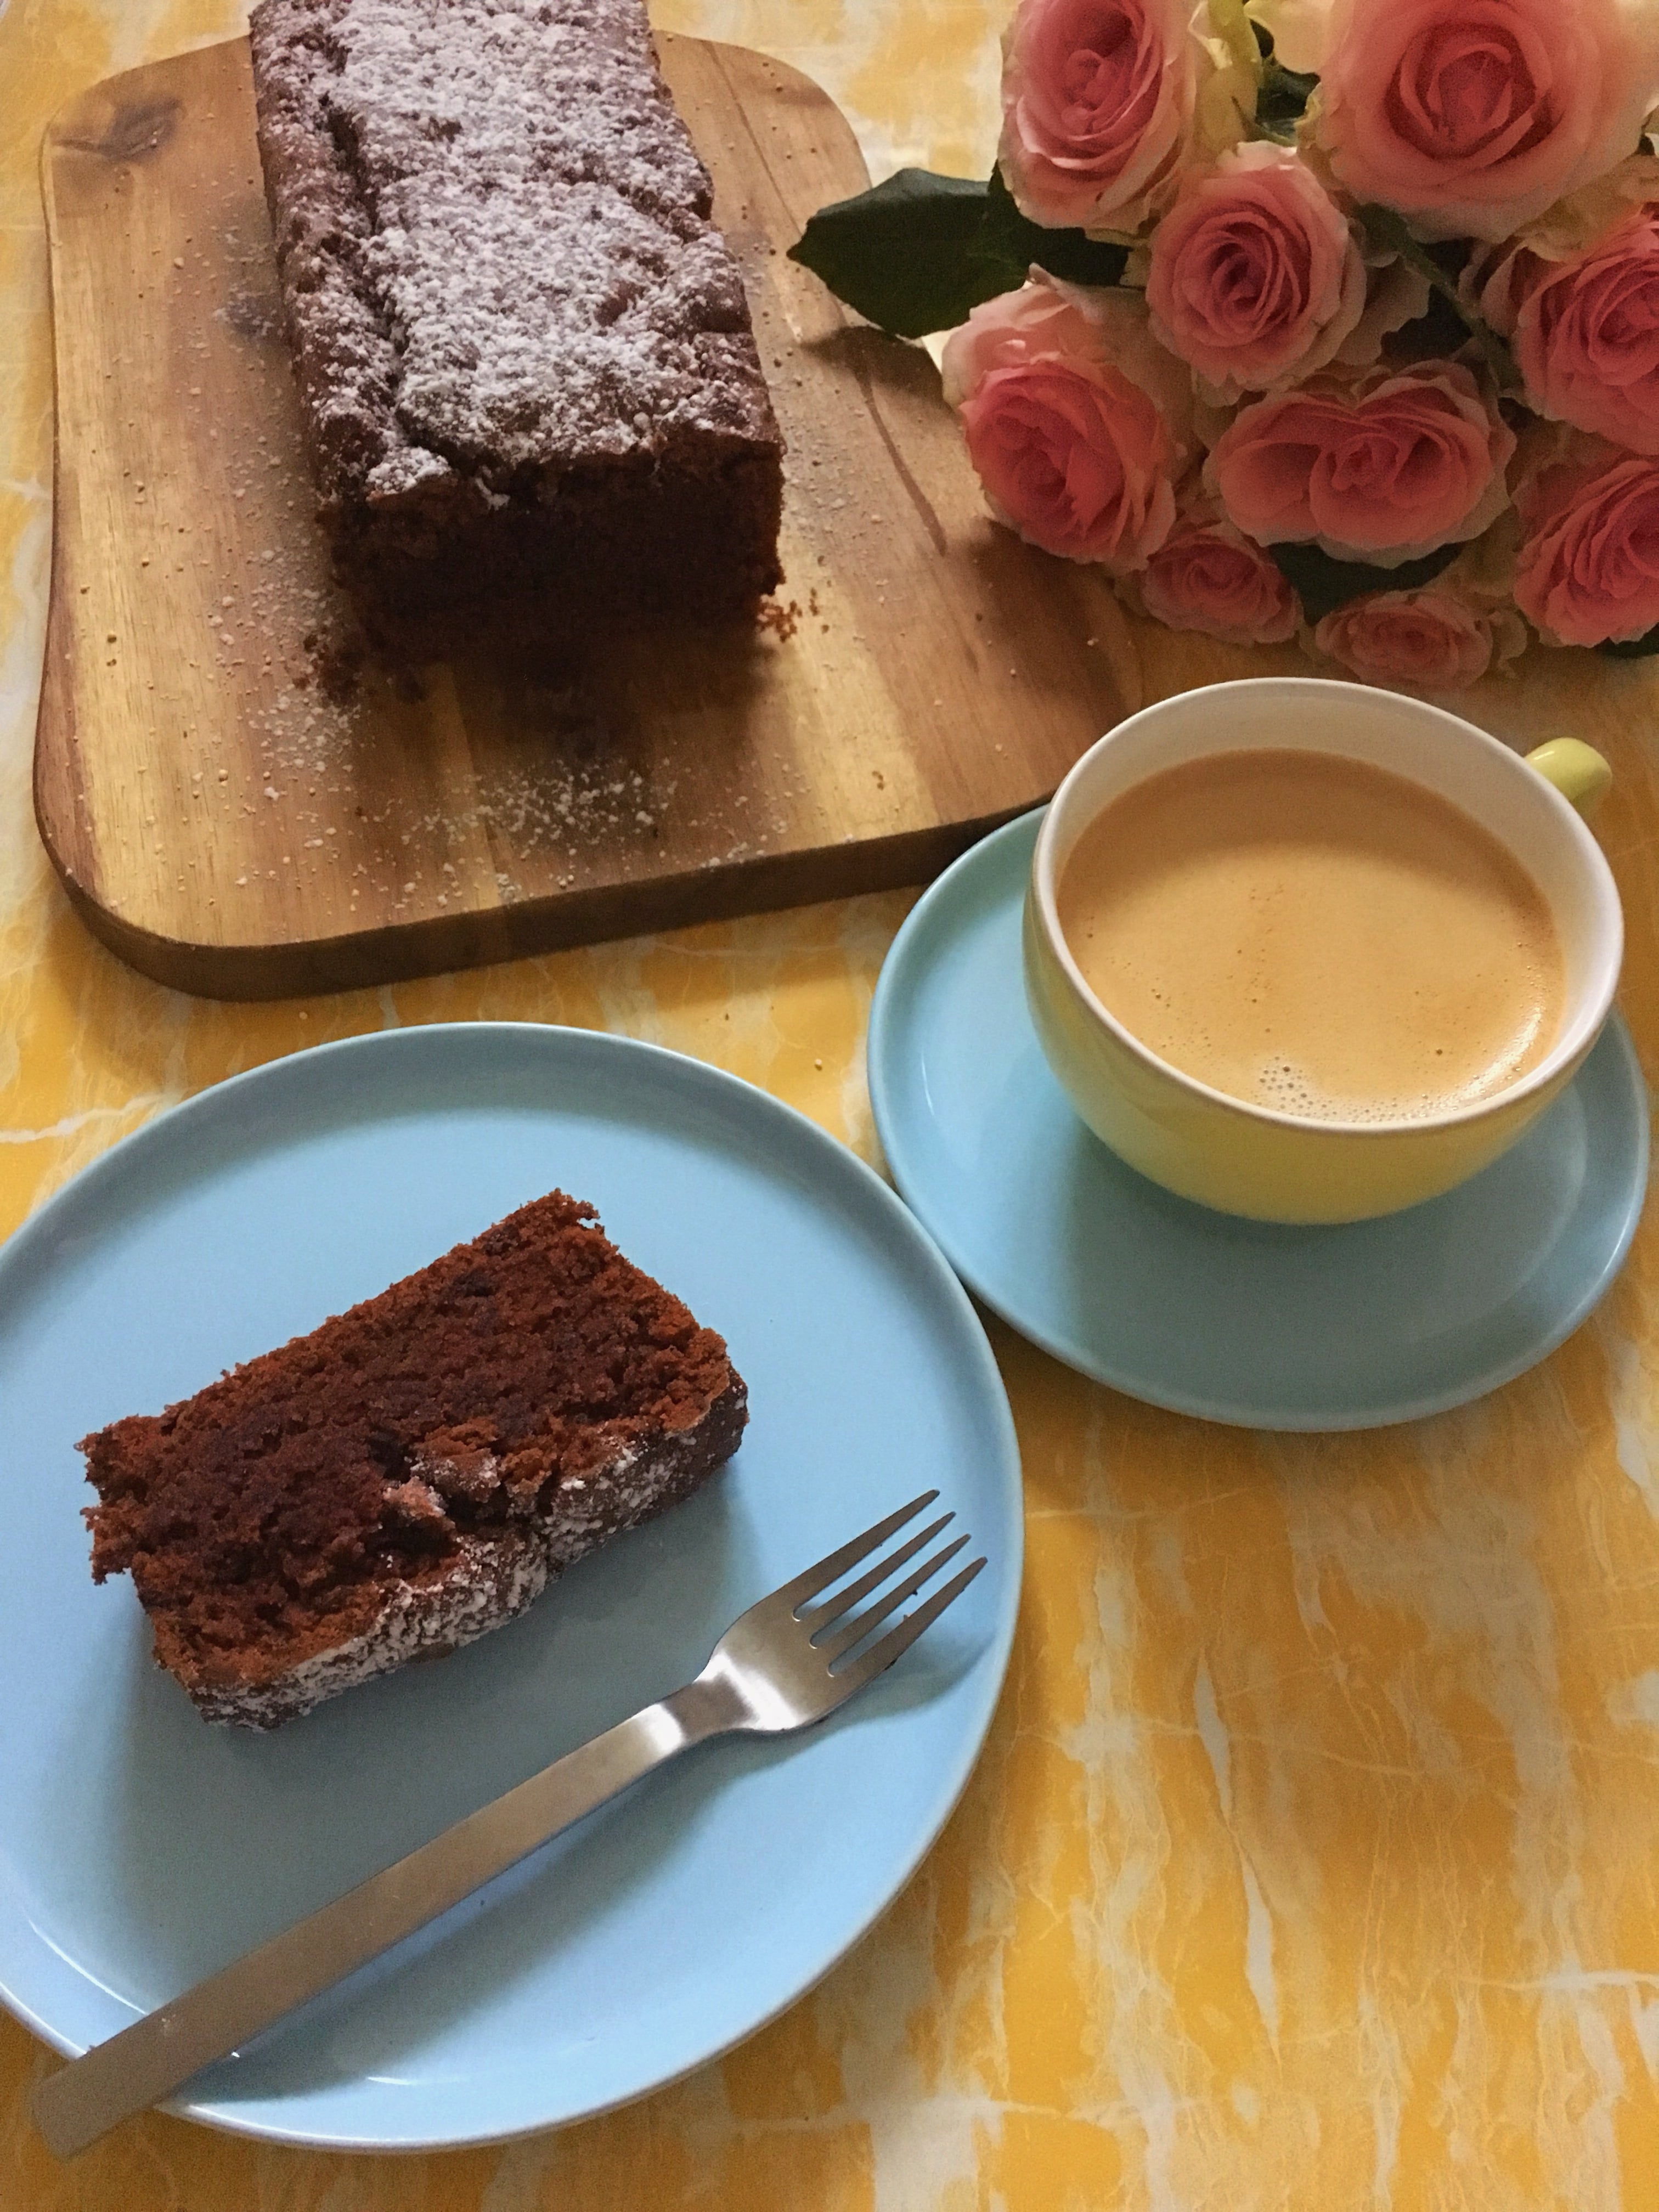 Heute könnt ihr auf dem Blog ein Rezept für einen veganen bionella Schoko-Kuchen entdecken und den saftigen Kuchen aus der Kastenform im Handumdrehen backen